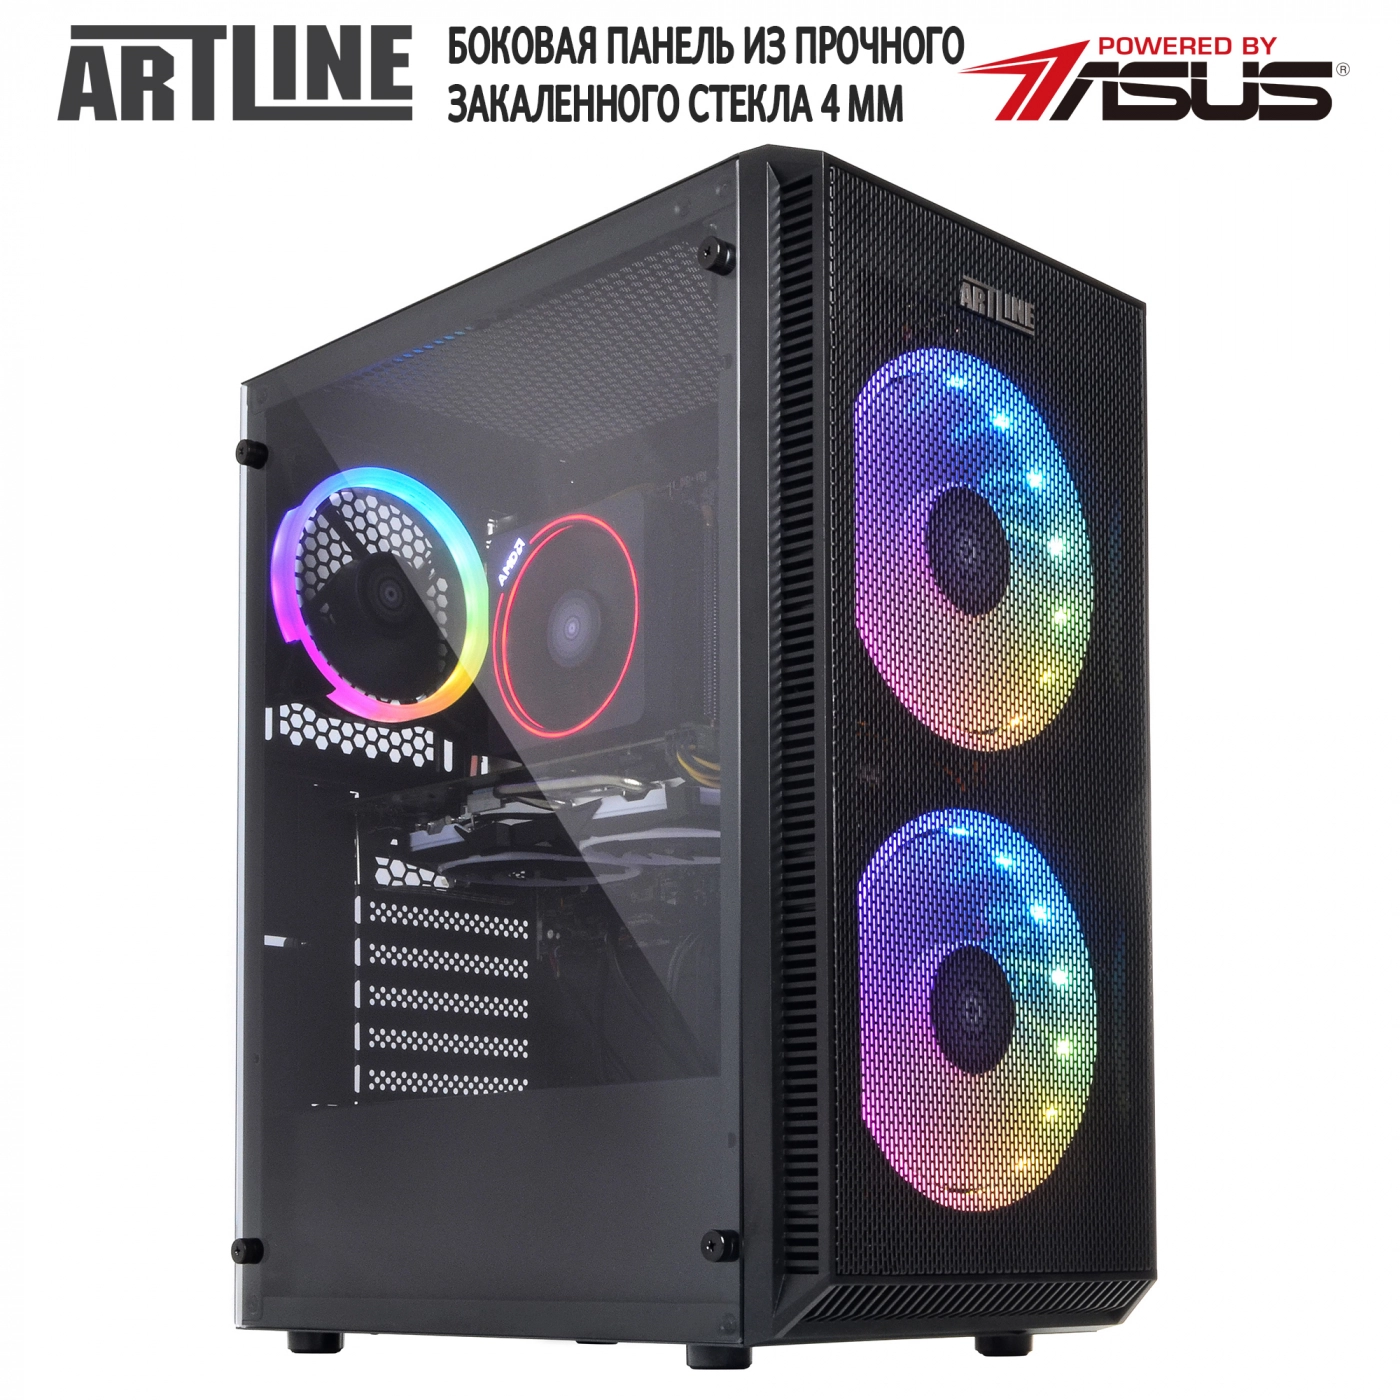 Купить Компьютер ARTLINE Gaming X63v14 - фото 9